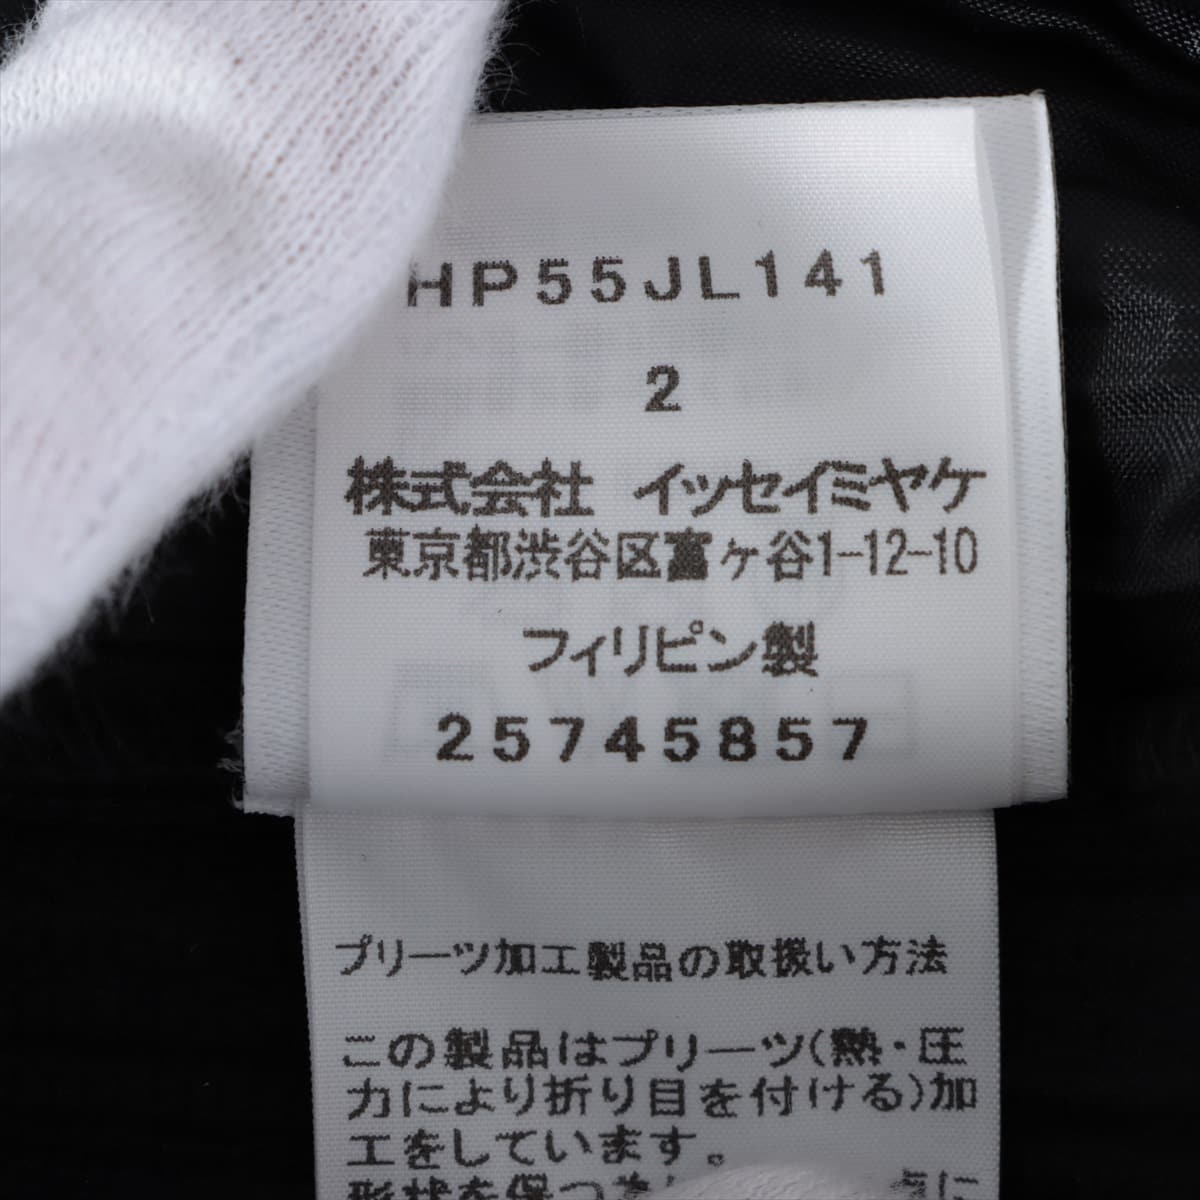 オムプリッセ イッセイミヤケ ポリエステル カーディガン 2 メンズ ブラック  HP55JL141